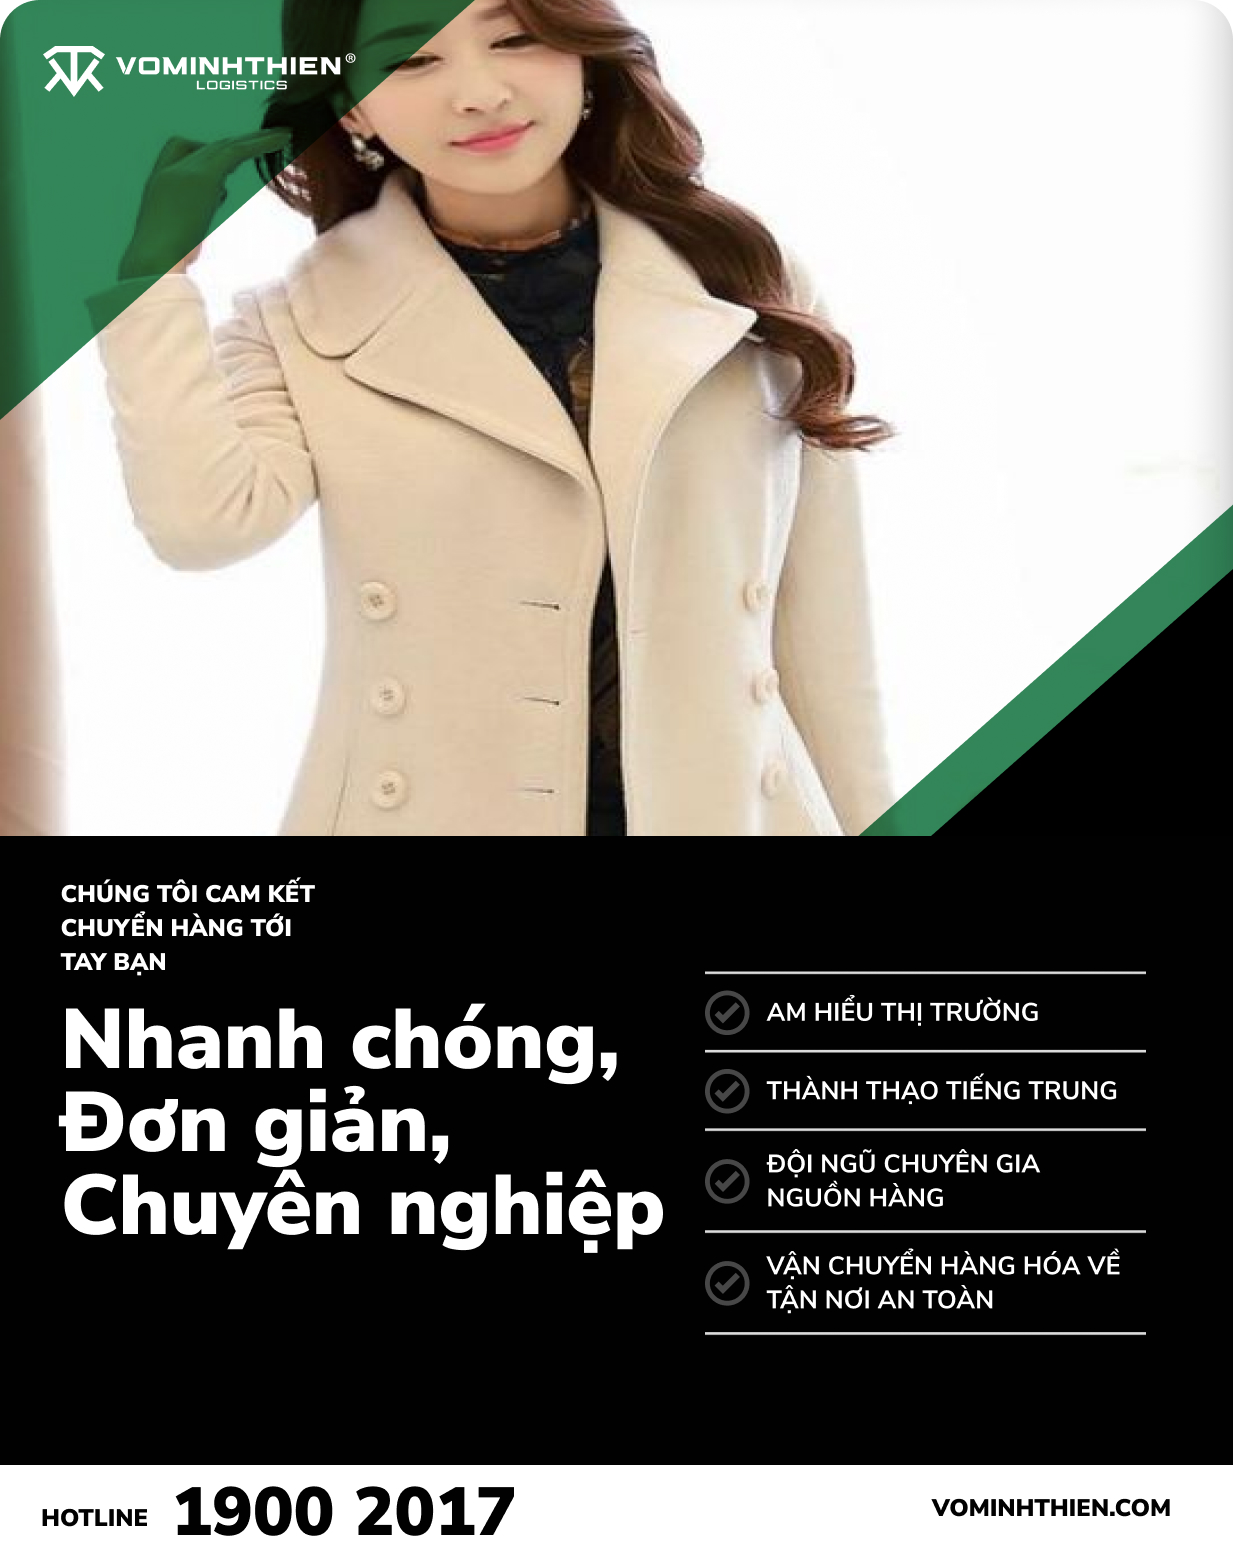 Võ Minh Thiên đơn vị nhập hàng áo khoác dạ tại Quảng Châu Trung Quốc uy tín giá tốt